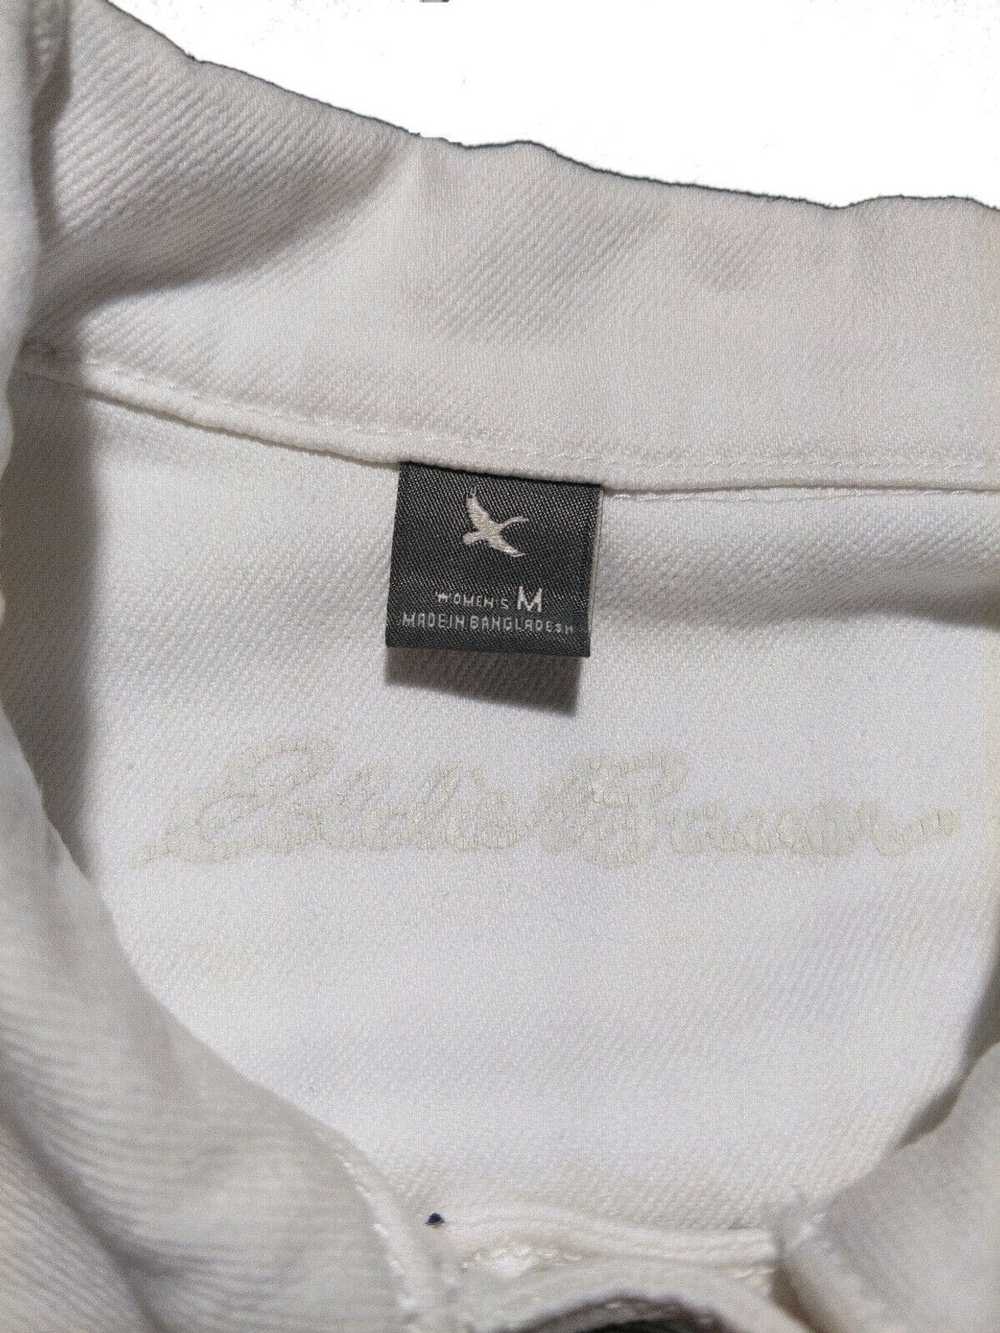 Eddie Bauer Medium White Vintage 2000s Denim Jean… - image 3